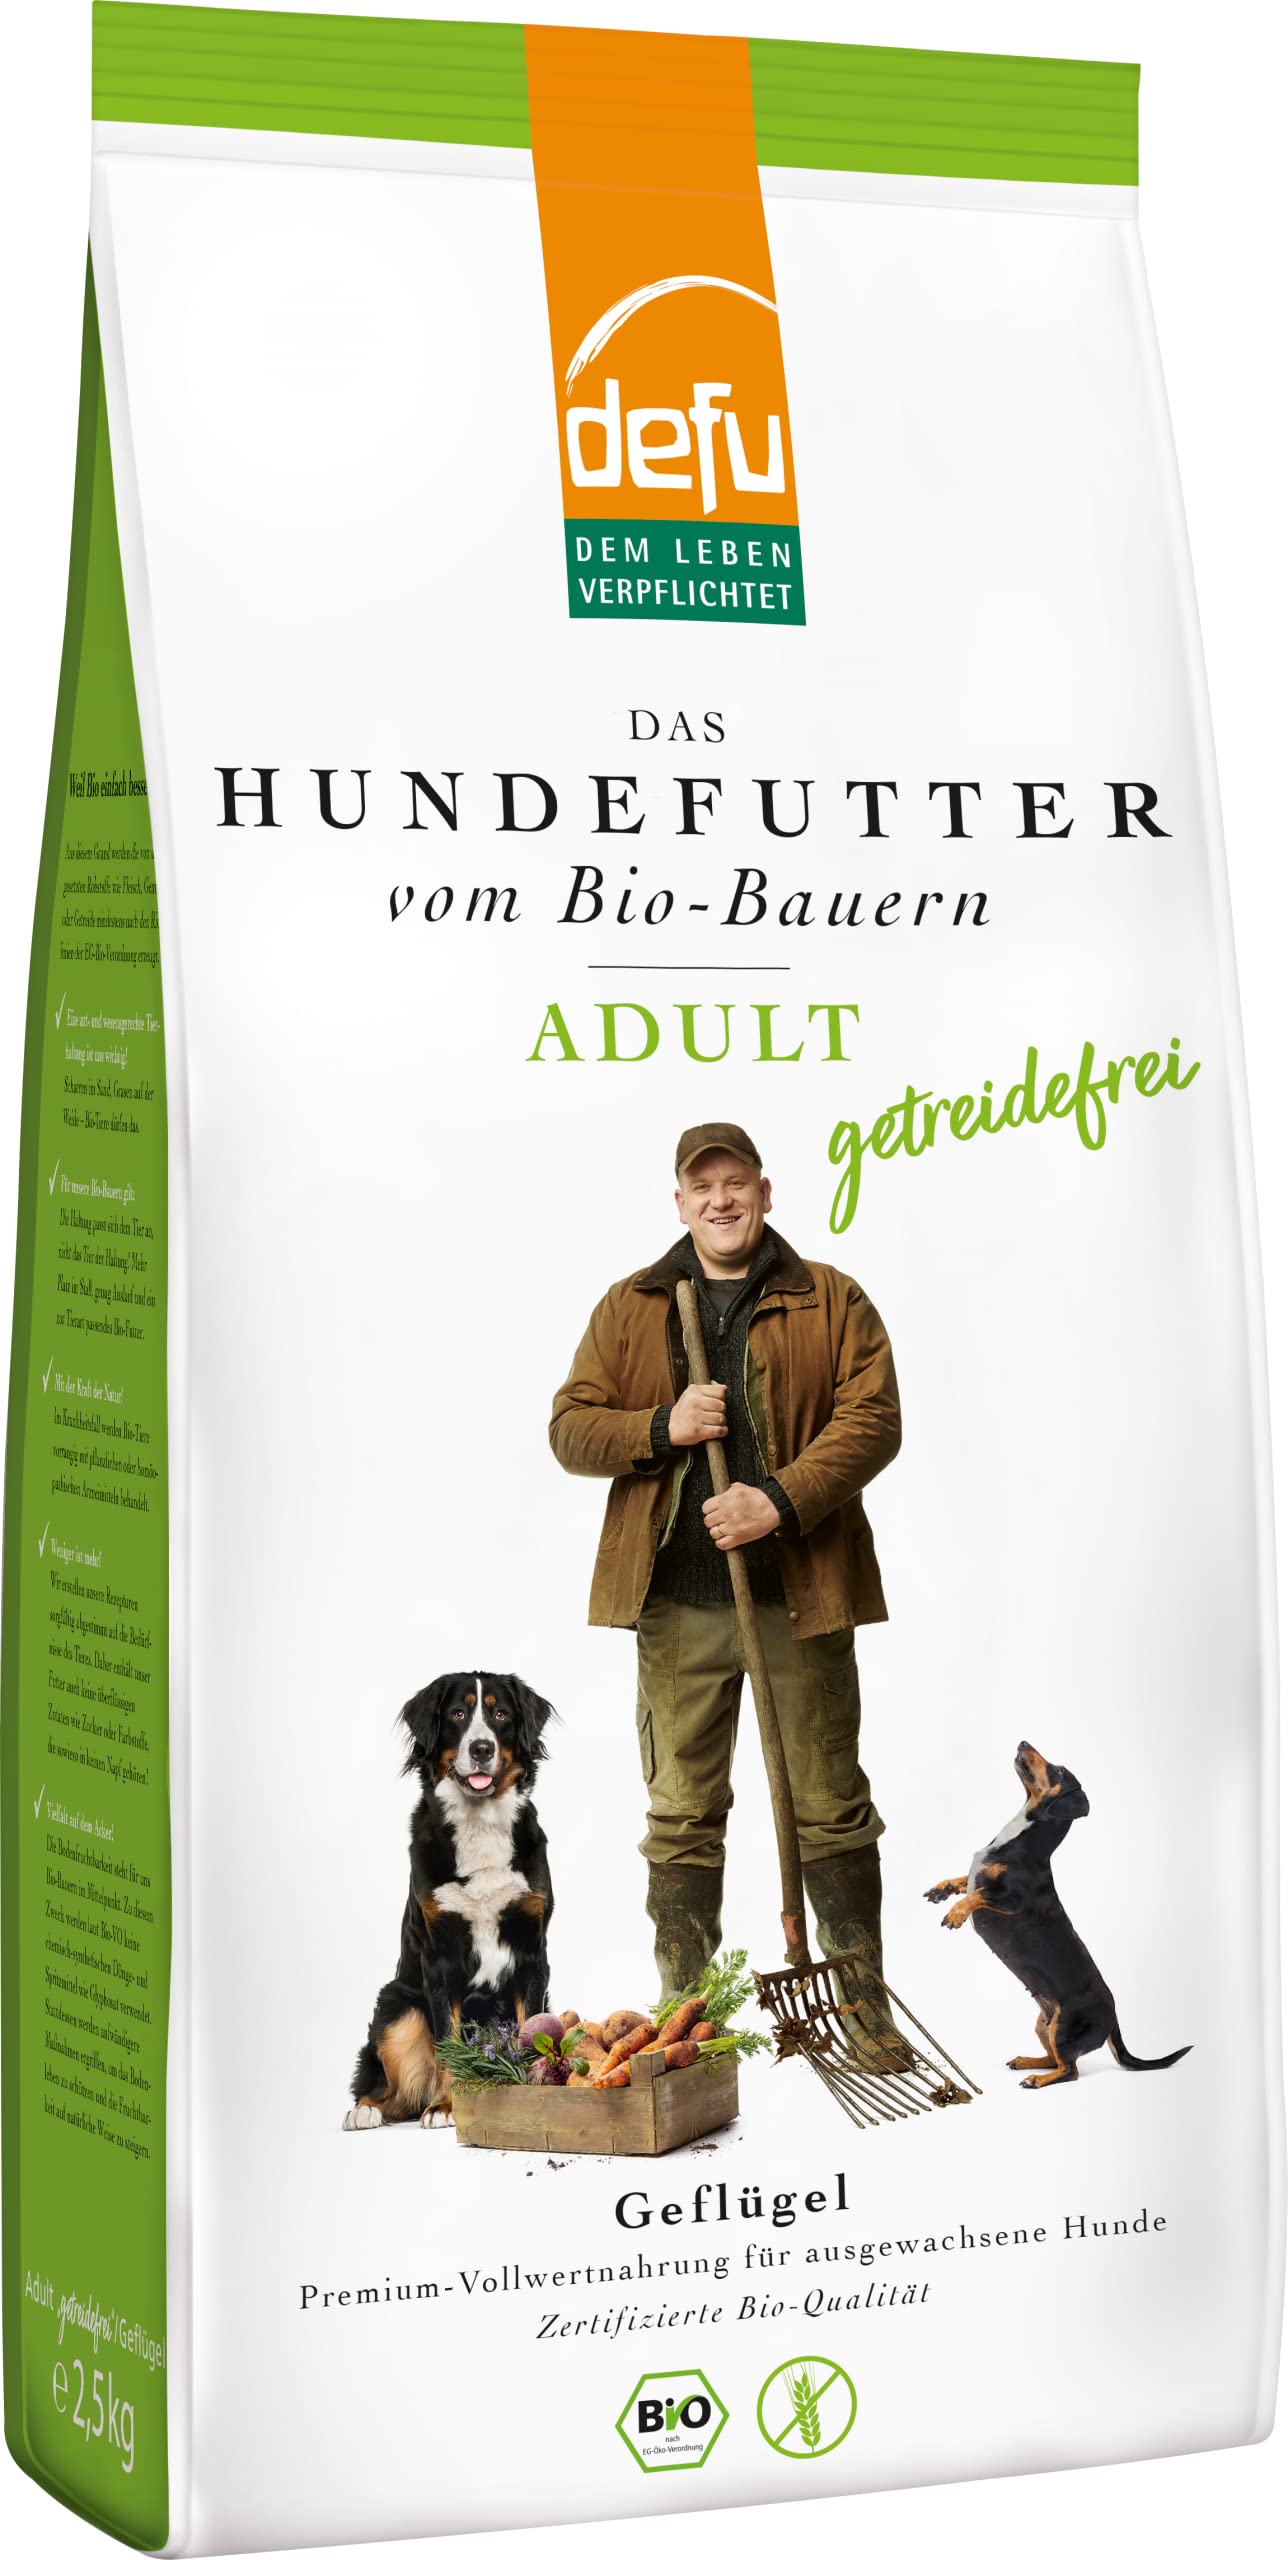 defu Hundefutter | 1 x 2,5 kg | Adult getreidefrei Bio Geflügel | Premium Bio Trockenfutter für ausgewachsene Hunde